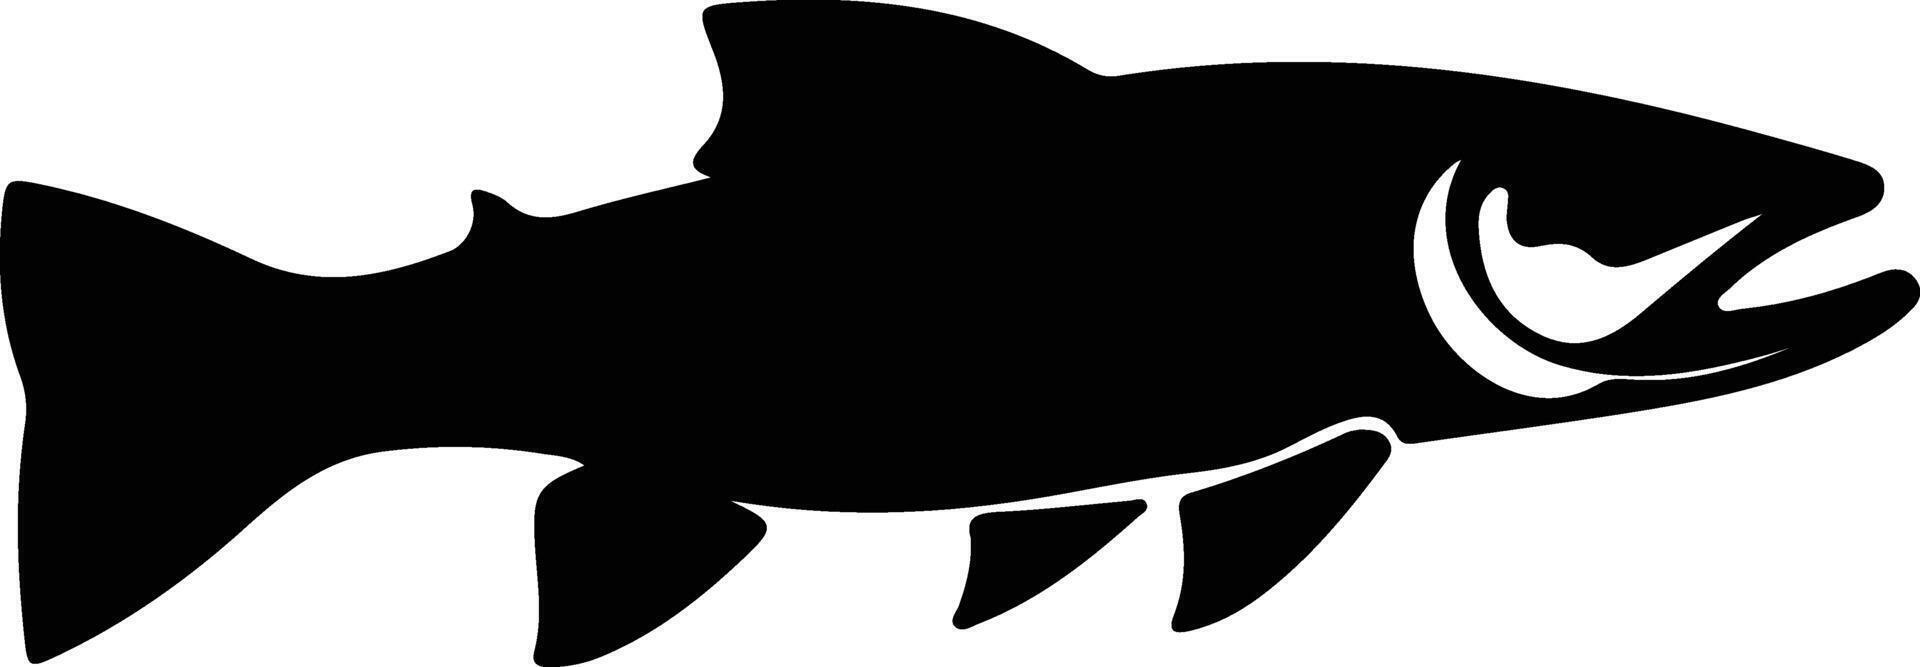 Lac truite noir silhouette vecteur